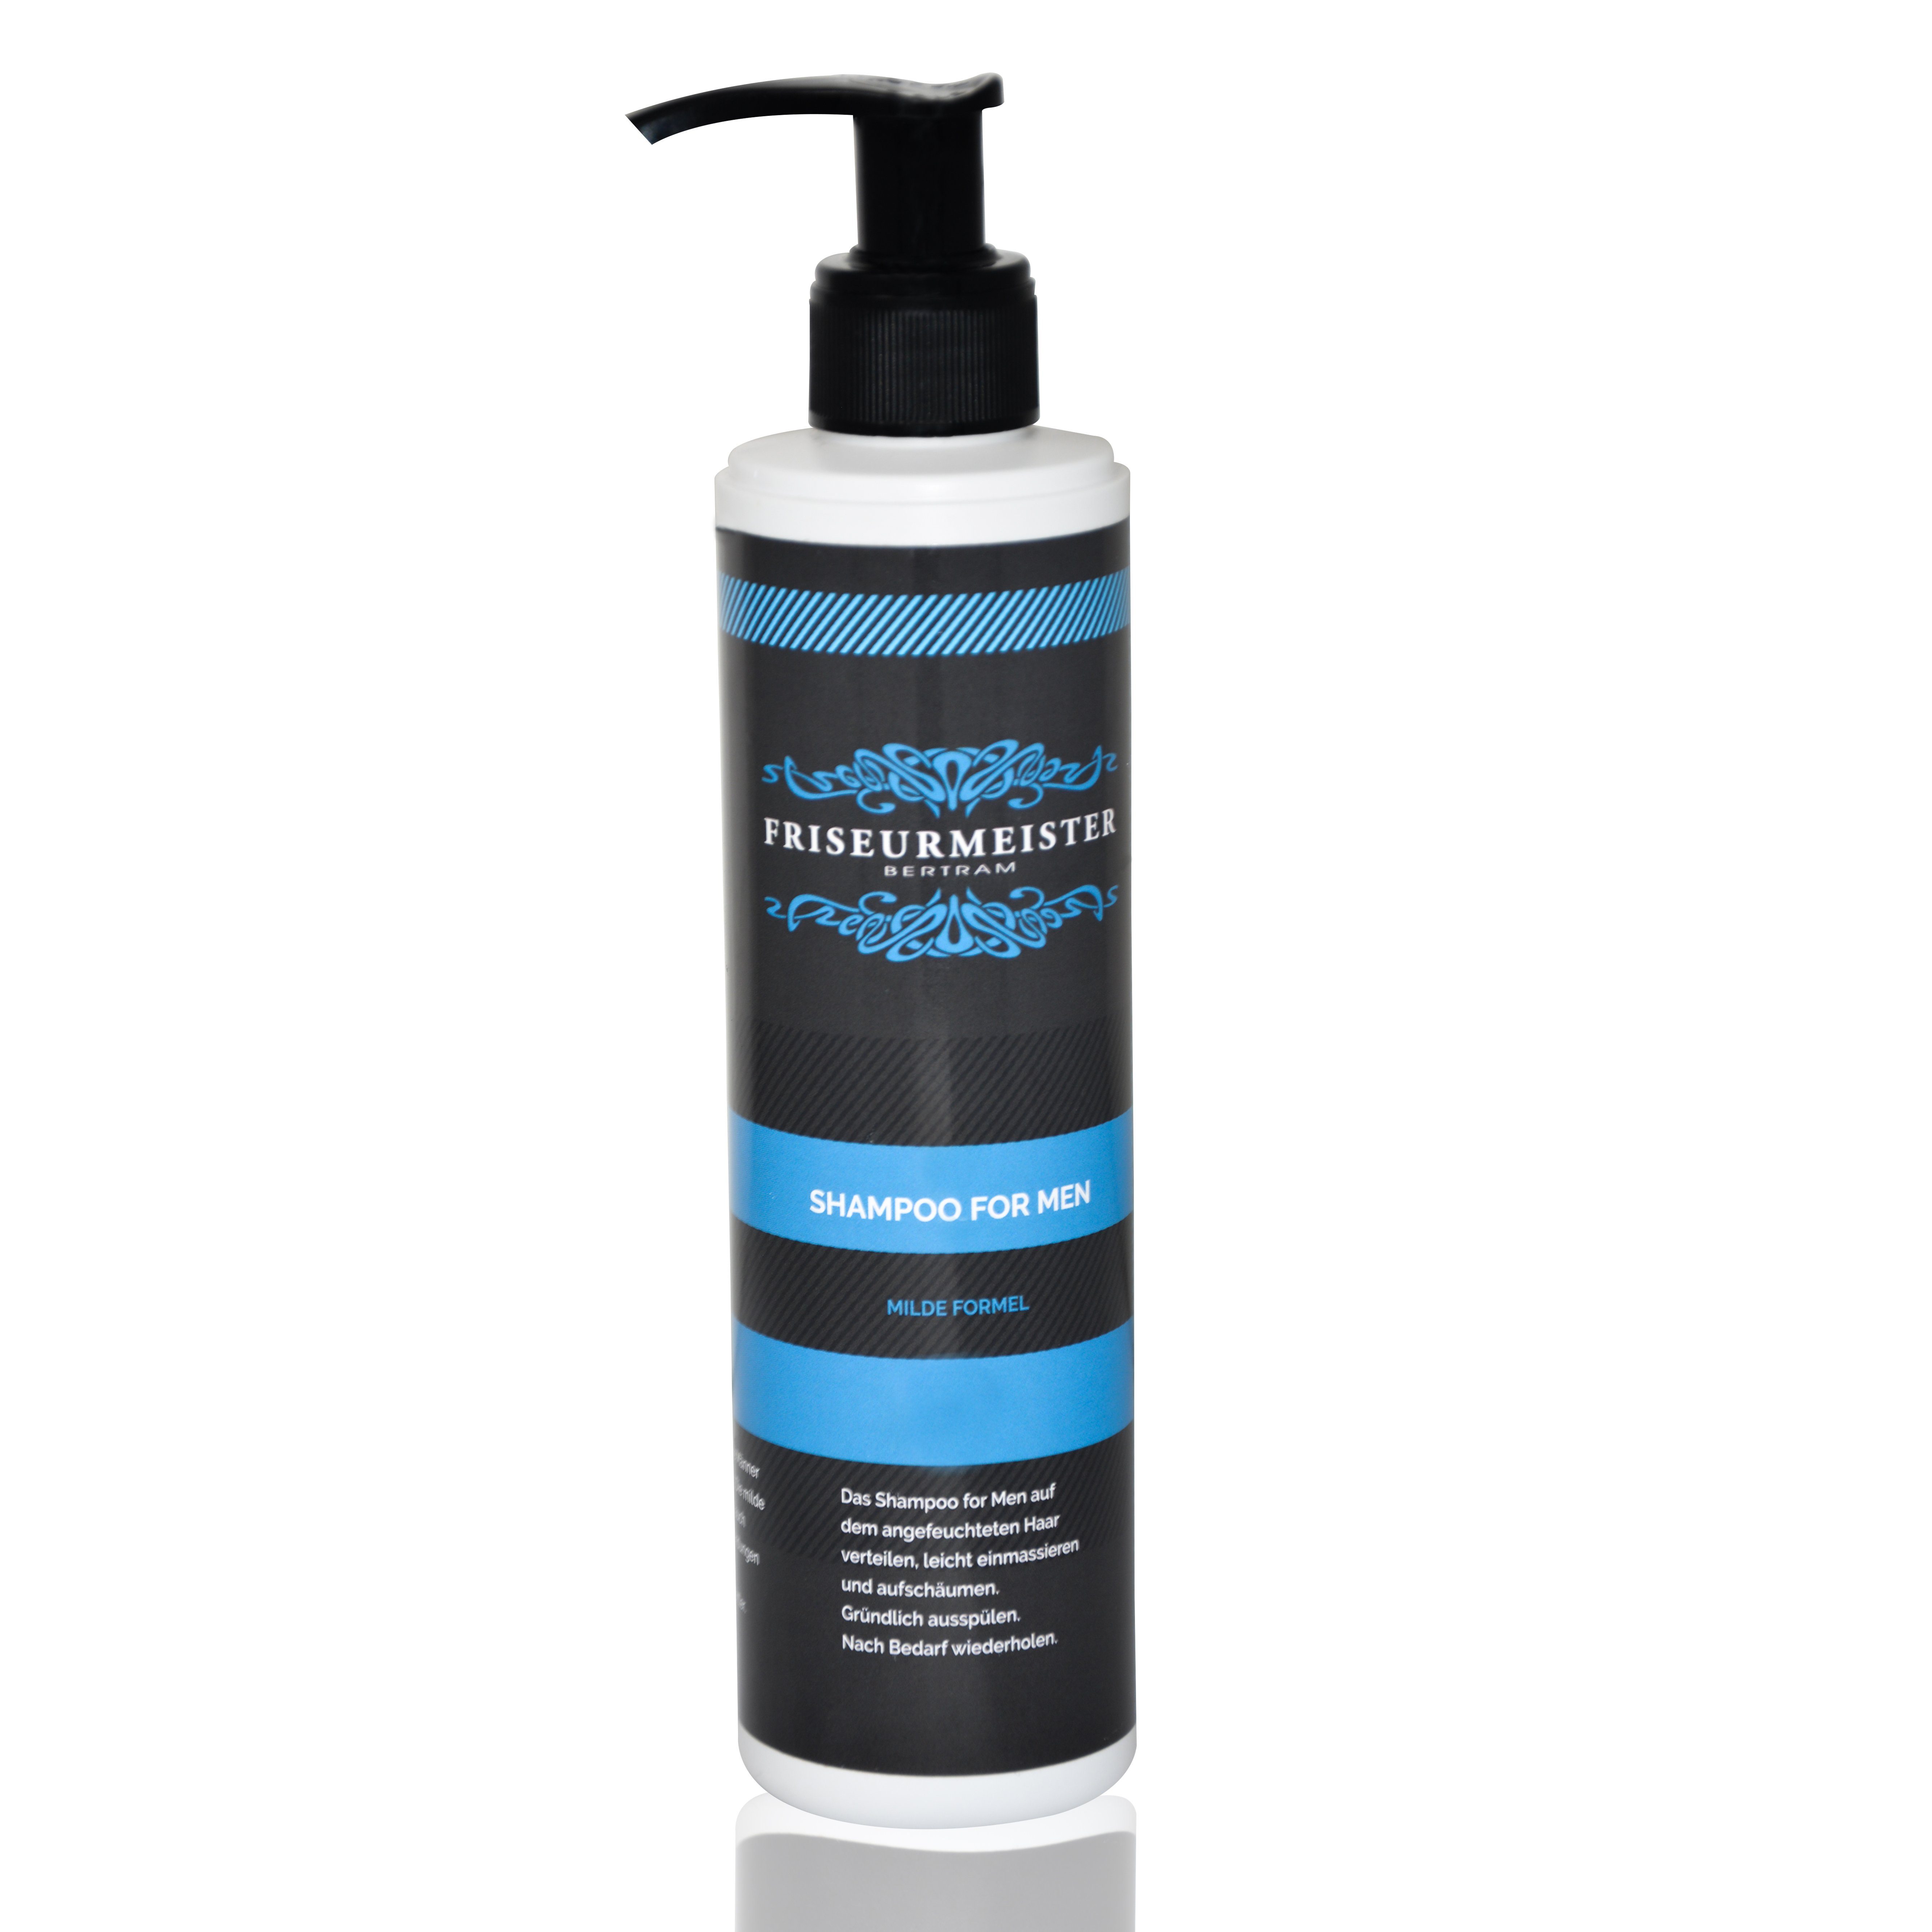 Friseurmeister Haarshampoo Shampoo for Men für Männer Haare Milde Formel  250ml